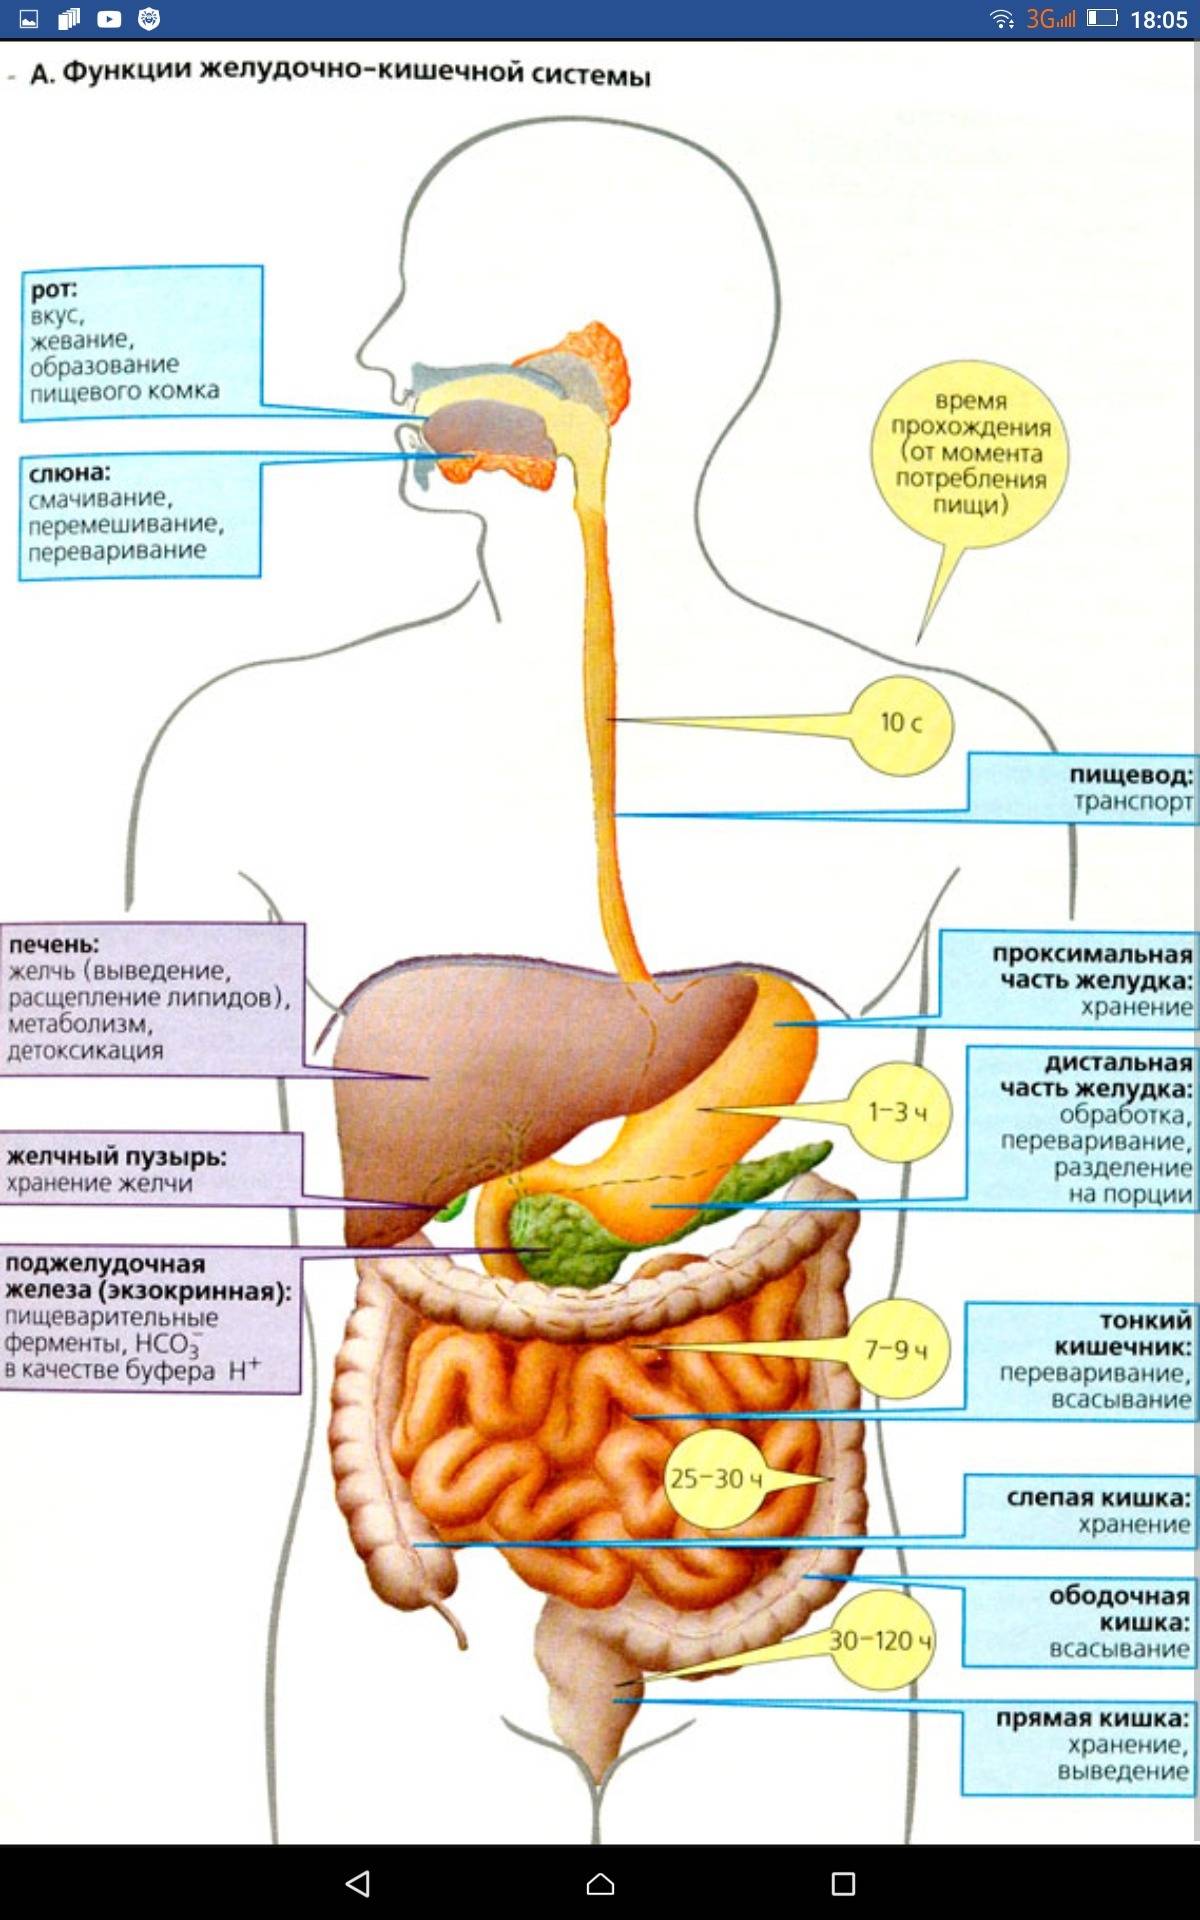 Пациентам: как переваривается пища в организме человека?